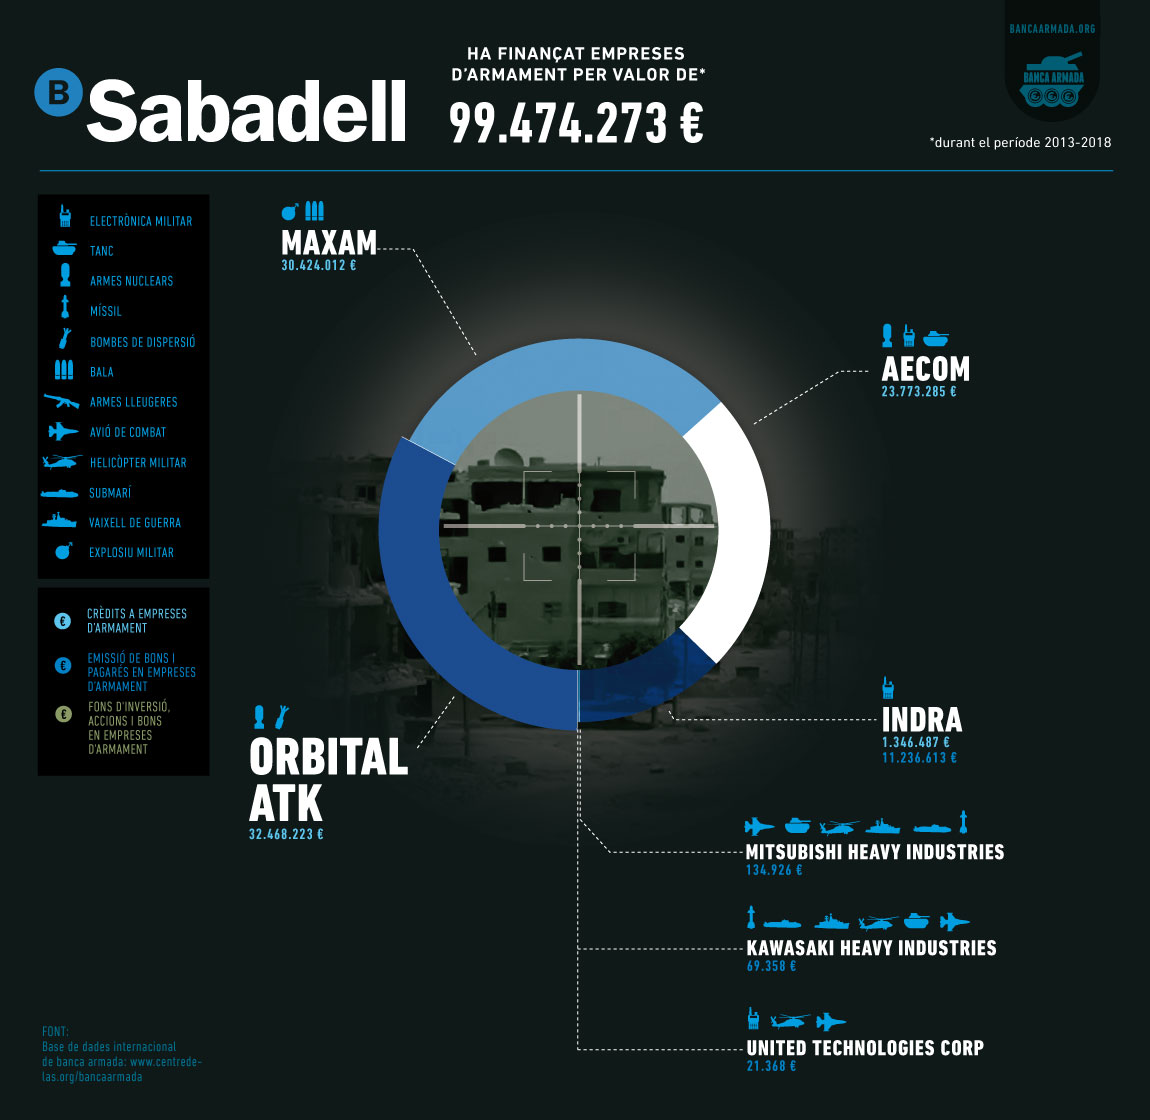 Infografia “Banc Sabadell: Finançament a empreses d’armes 2013-2018”